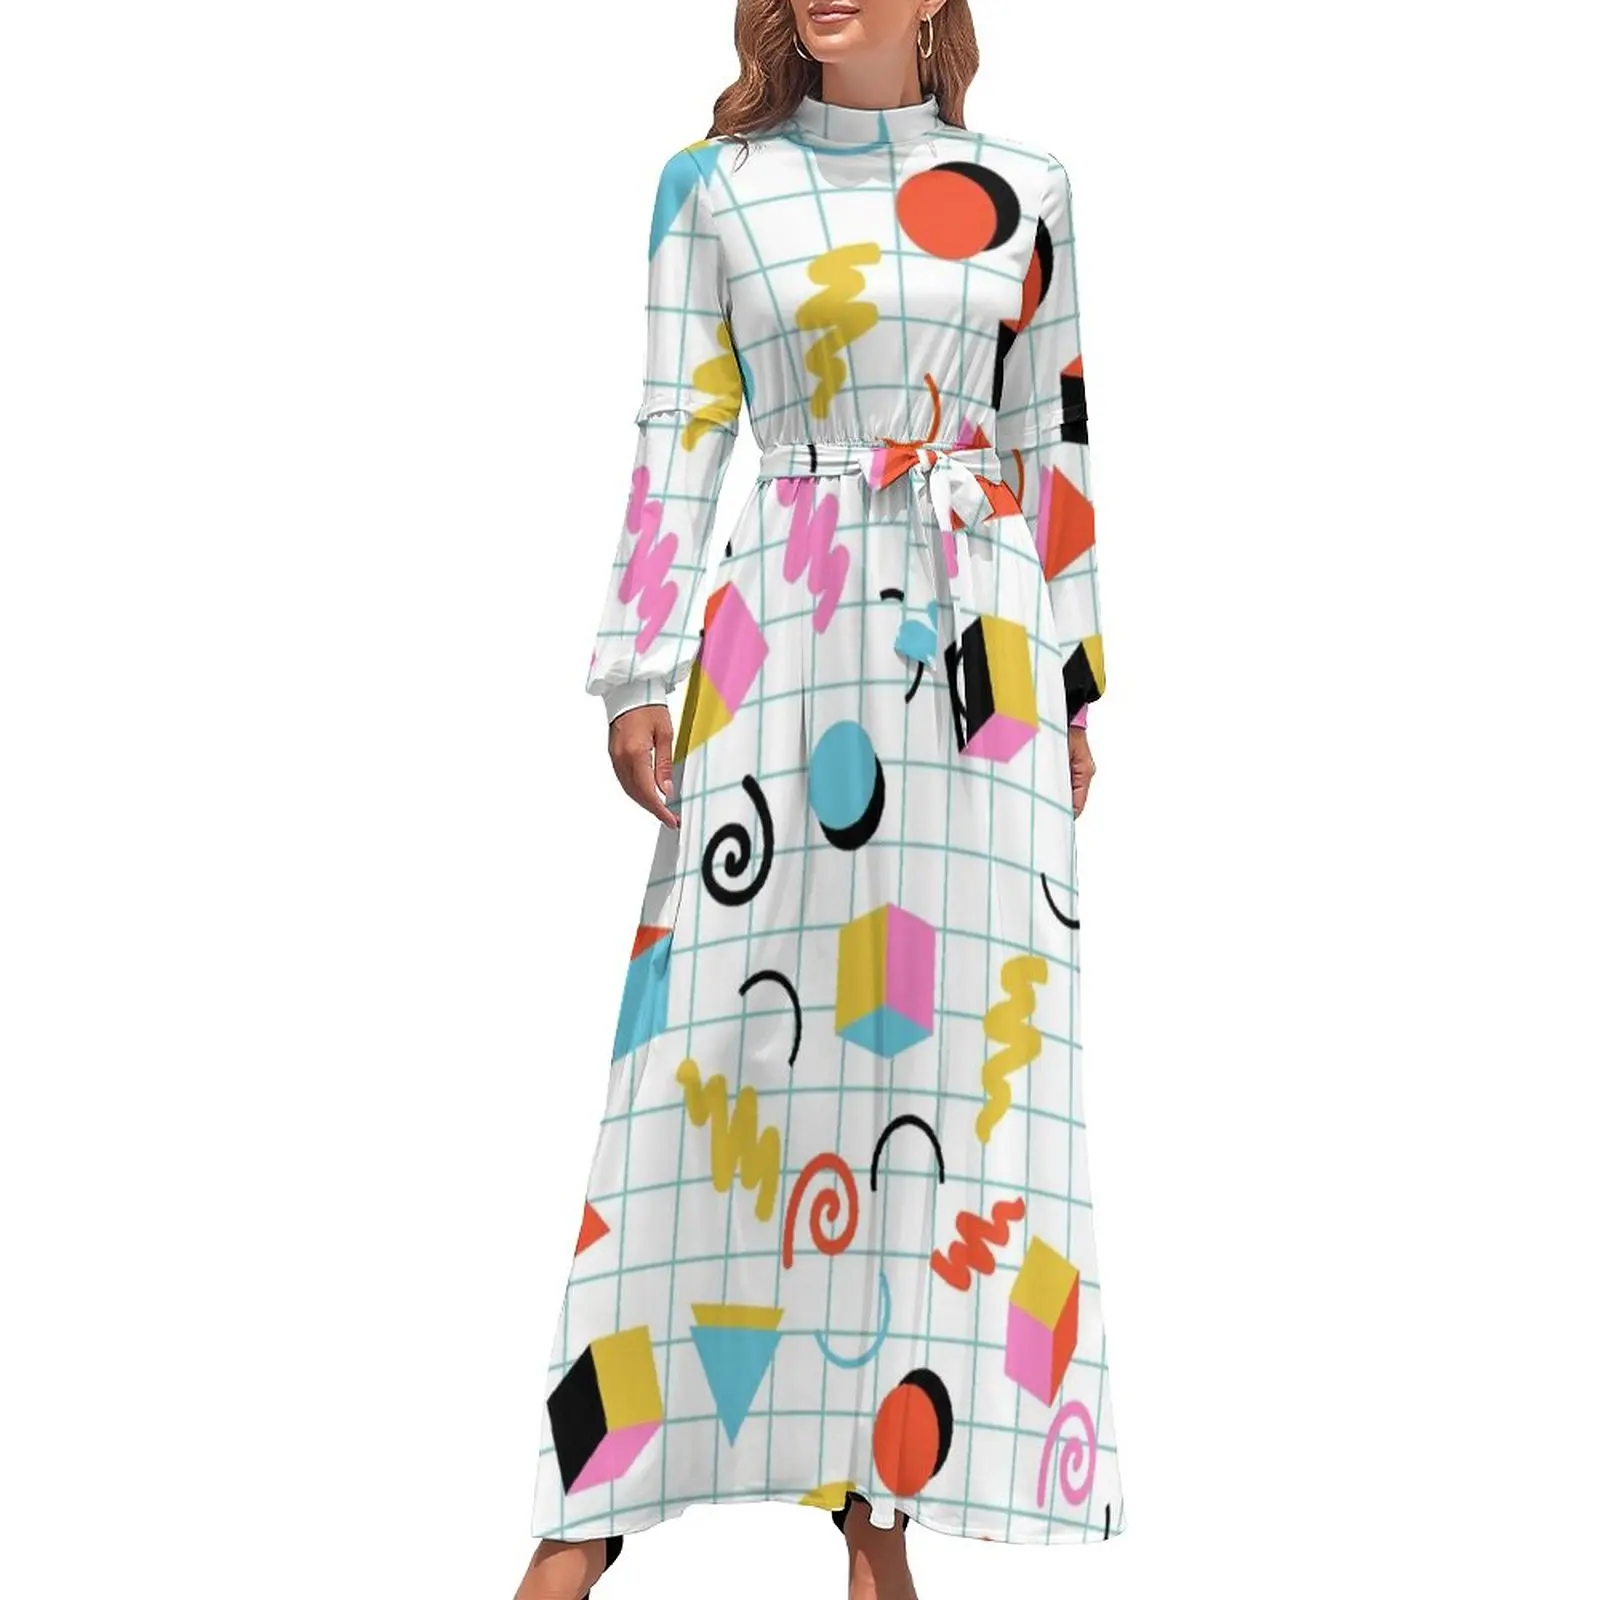 

Memphis Pattern 80s Dress Retro Minimal Geometric Aesthetic Bohemia Dresses Women Long Sleeve High Waist Cute Long Maxi Dress